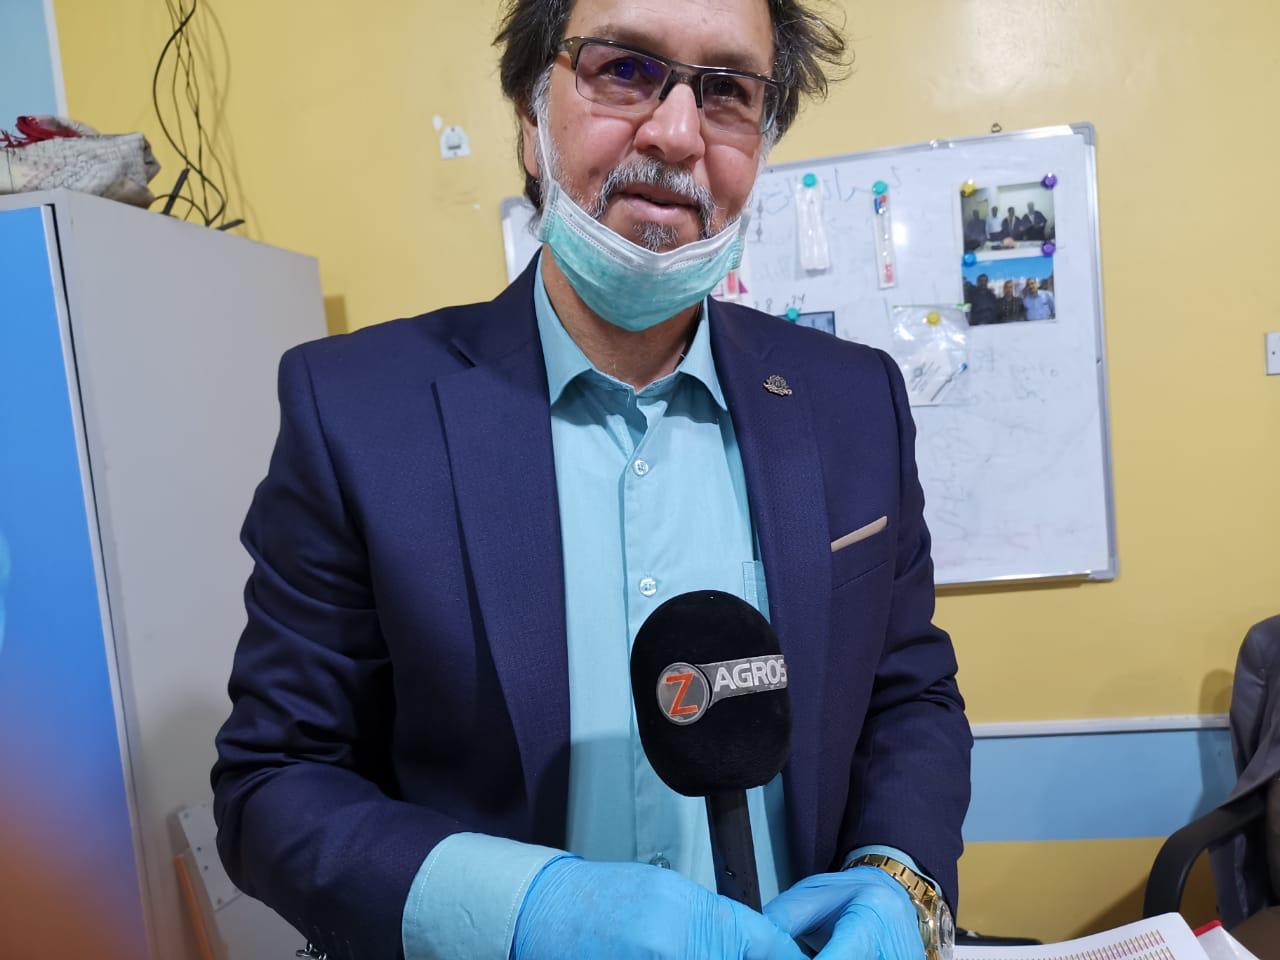 وسائل اعلام محلية وعالمية تغطي النشاطات العلمية لجامعة البصرة في مواجهة مخاطر كورونا فيروس